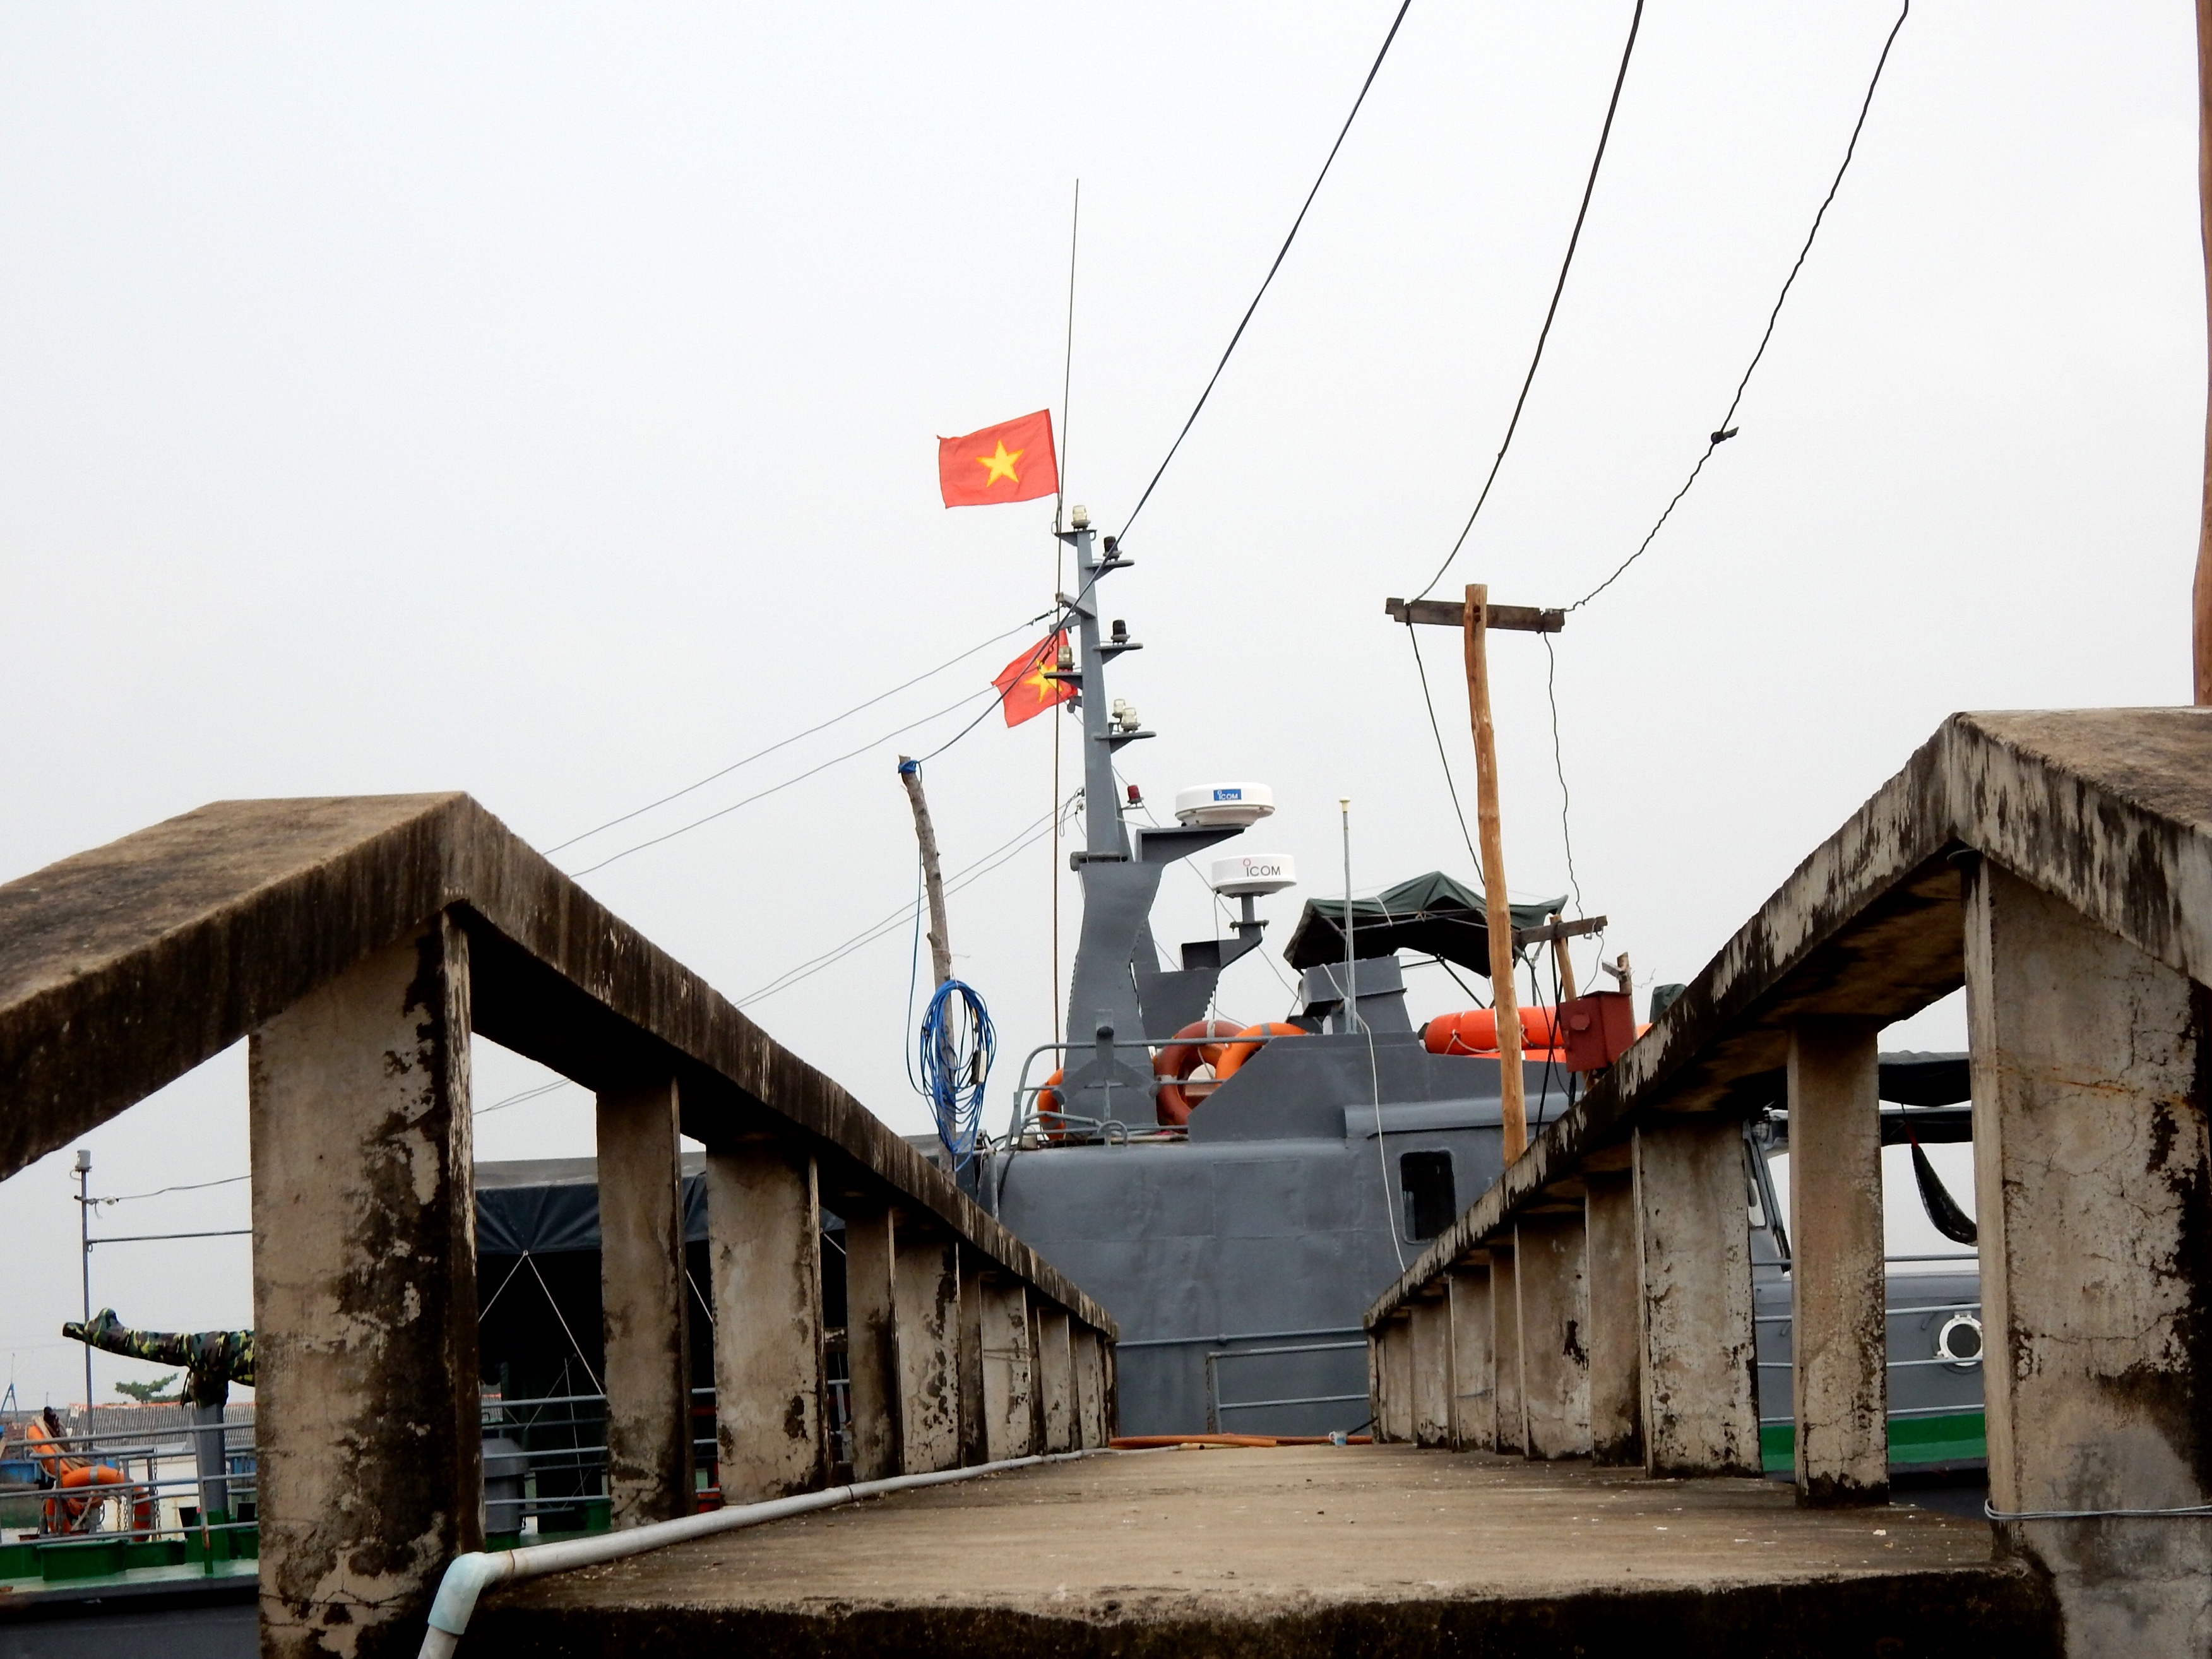 Tàu tuần tiễu của Hải đội 2, BĐBP Cà Mau trực chiến tại thị trấn Sông Đốc, Cà Mau (11.2015)